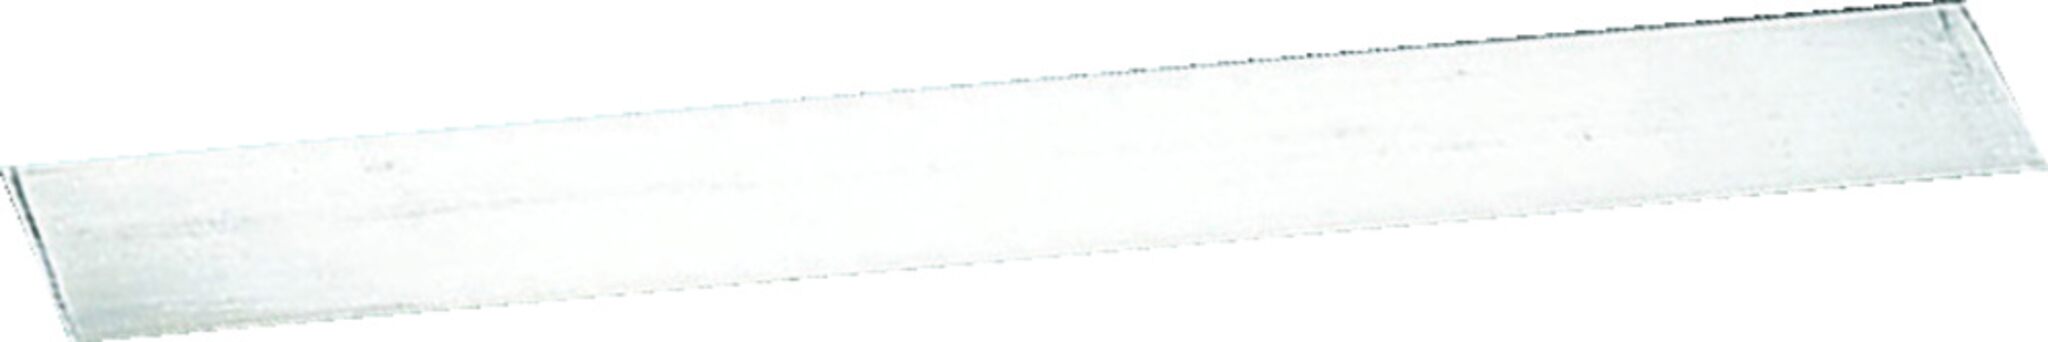 Tarpaulin hanger steel strap